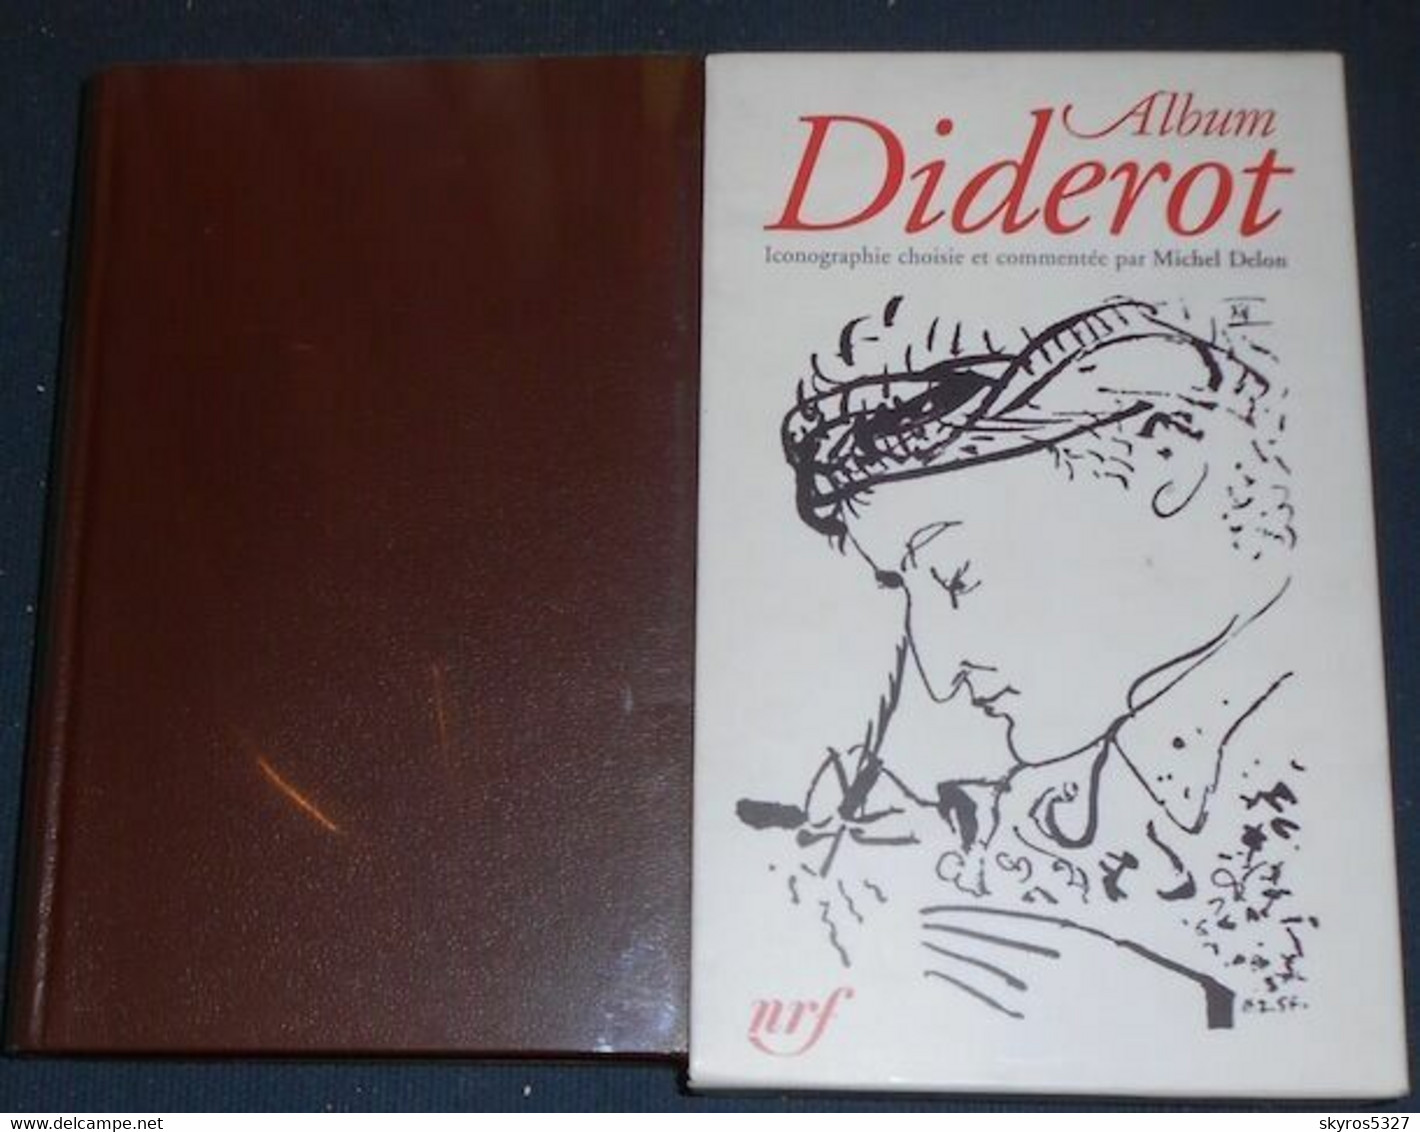 Album Diderot - La Pléiade